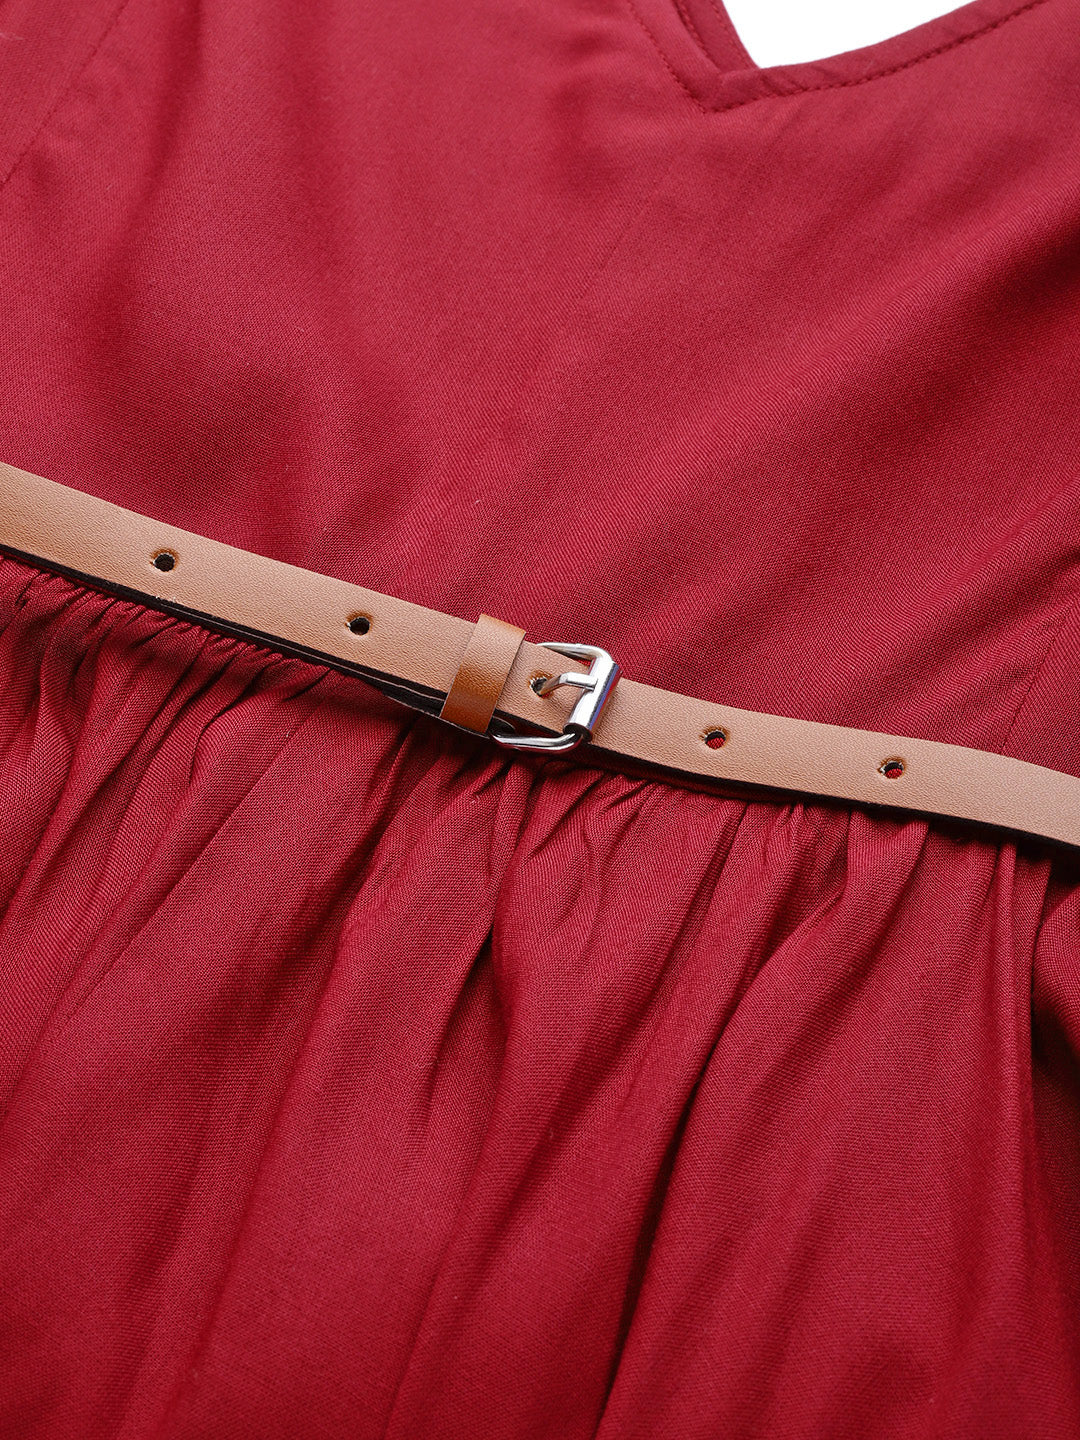 Maroon Asymmetric Belted Dress